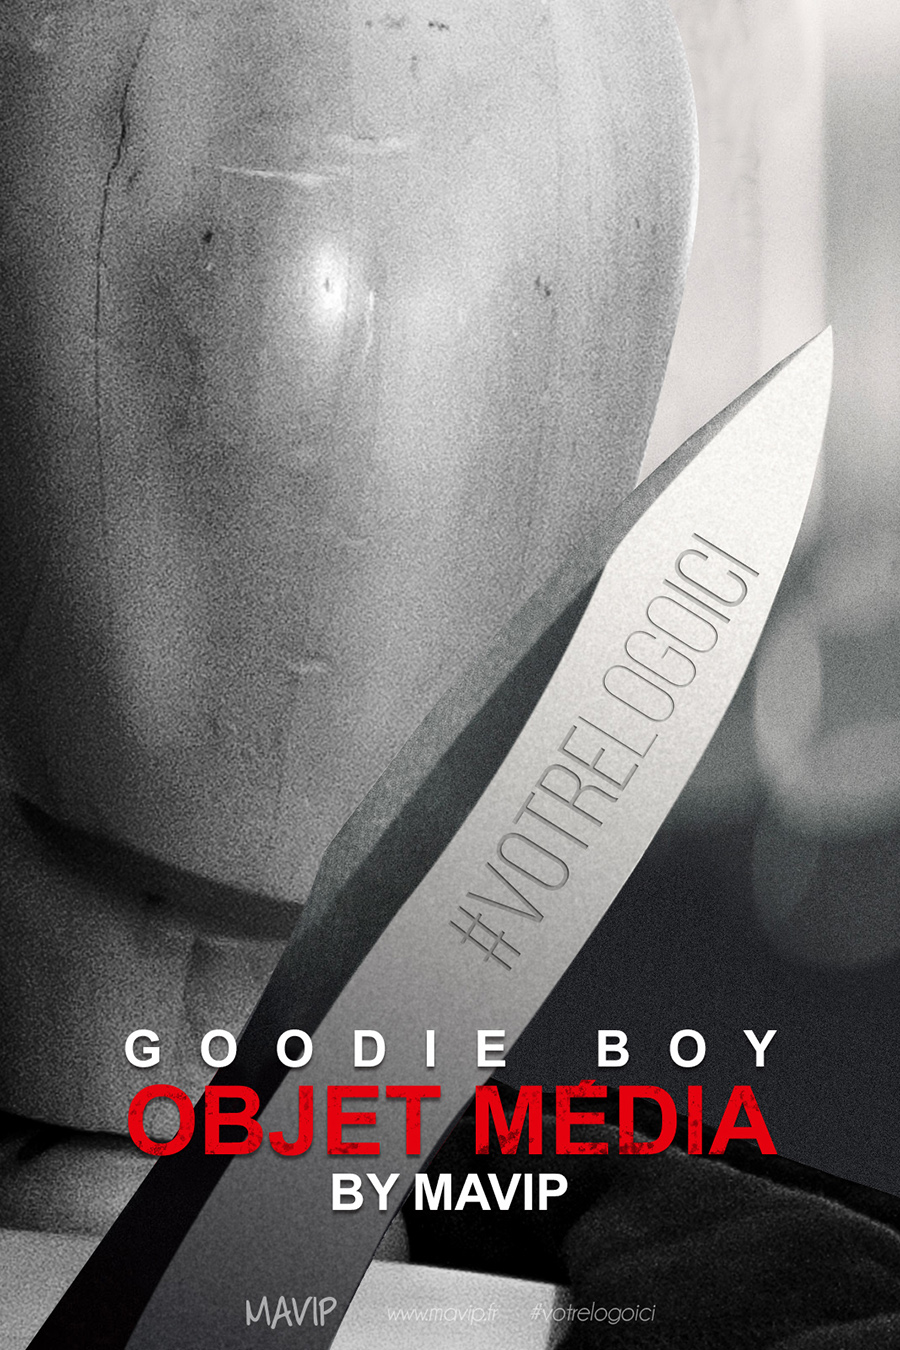 Goodie Boy fait son cinéma avec ses objets médias personnalisés by Mavip